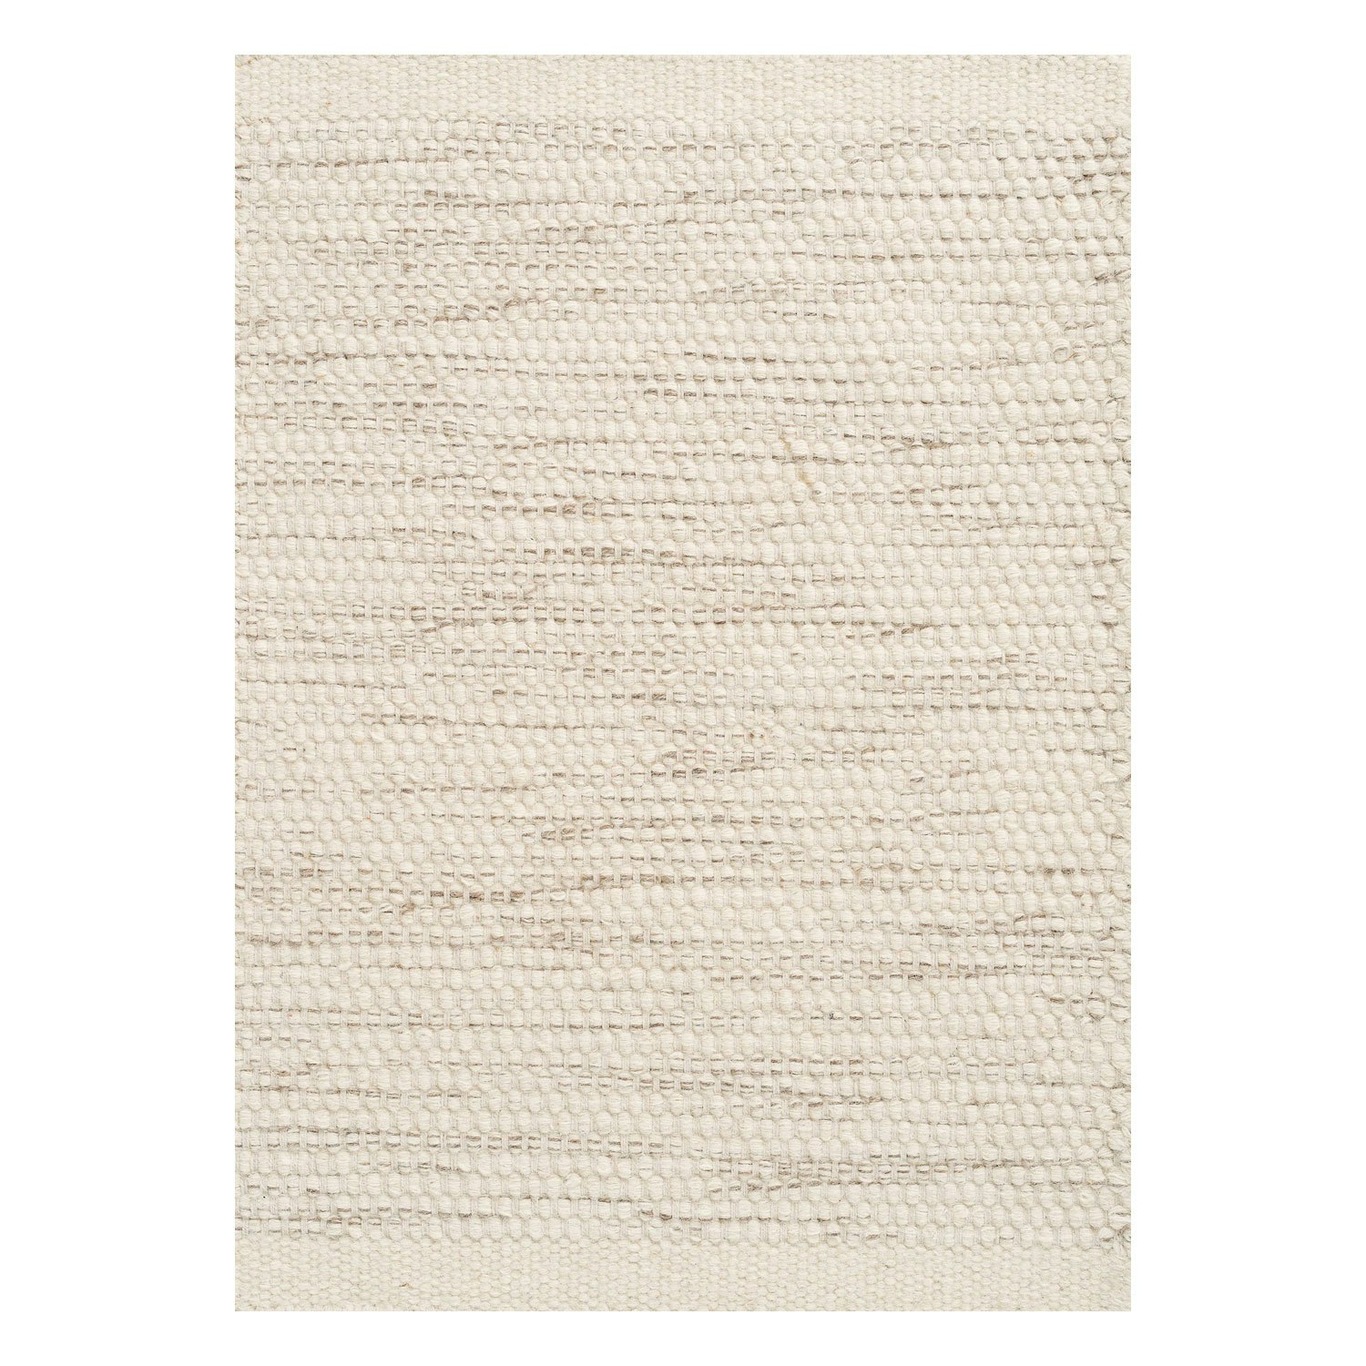 Asko Matta Off-white, 200x300 cm